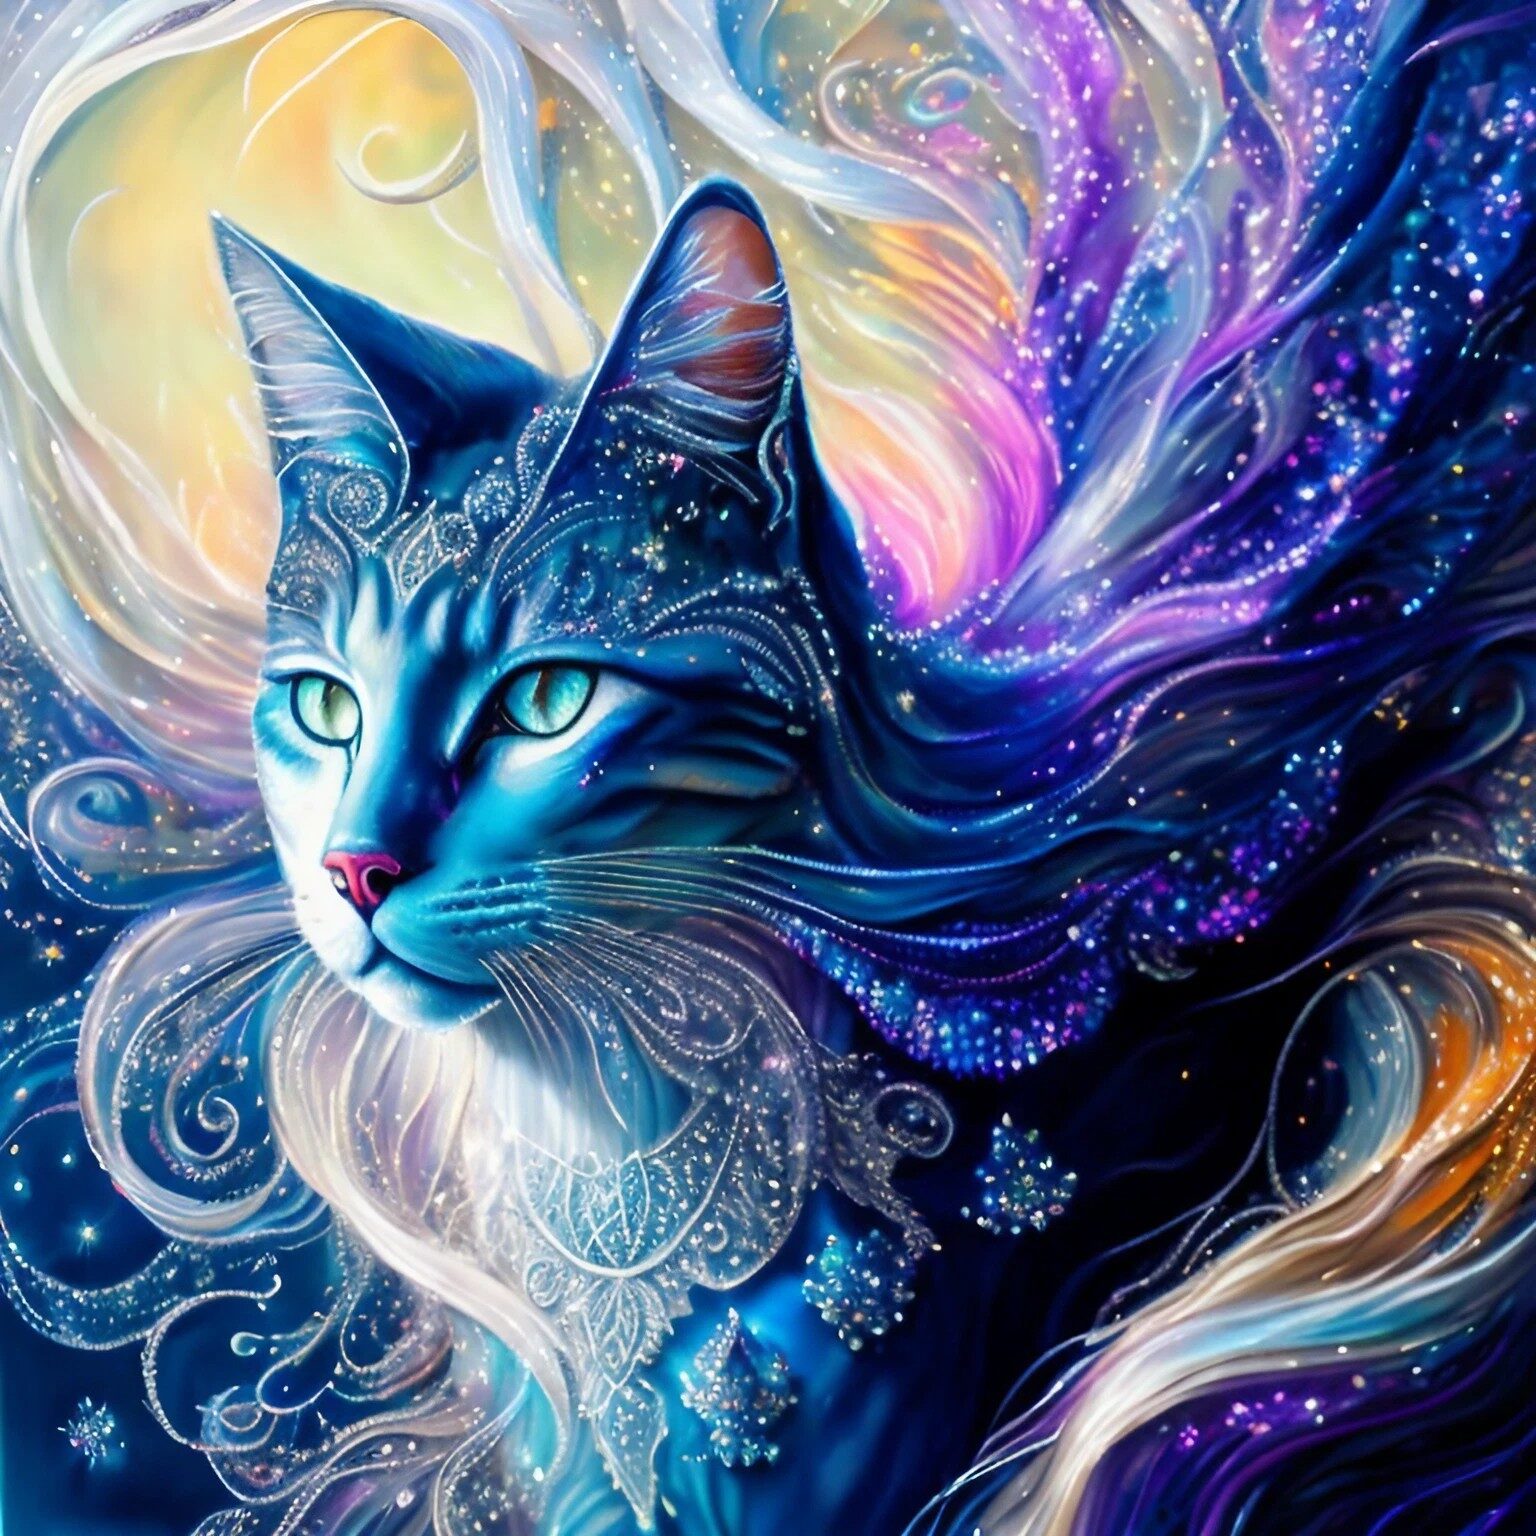 銀と虹色に輝く神秘的な白猫＆精霊風の生き物の無料イラスト画像素材